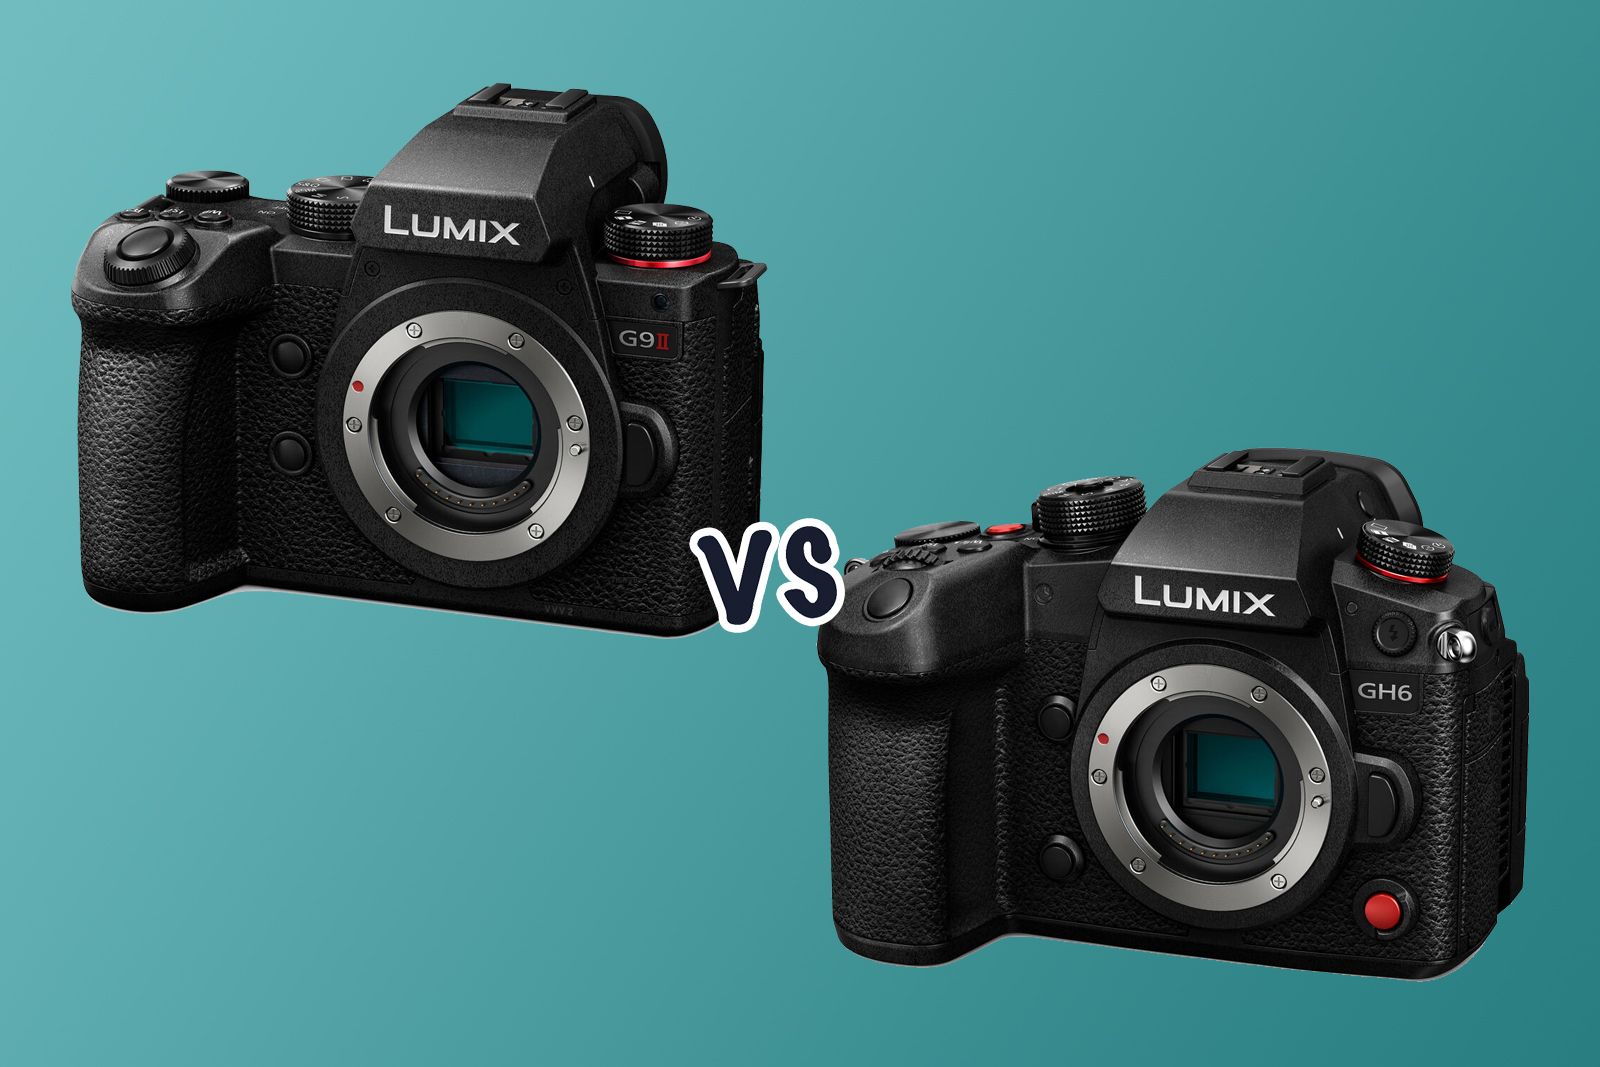 Panasonic Lumix G9ii vs Lumix GH6